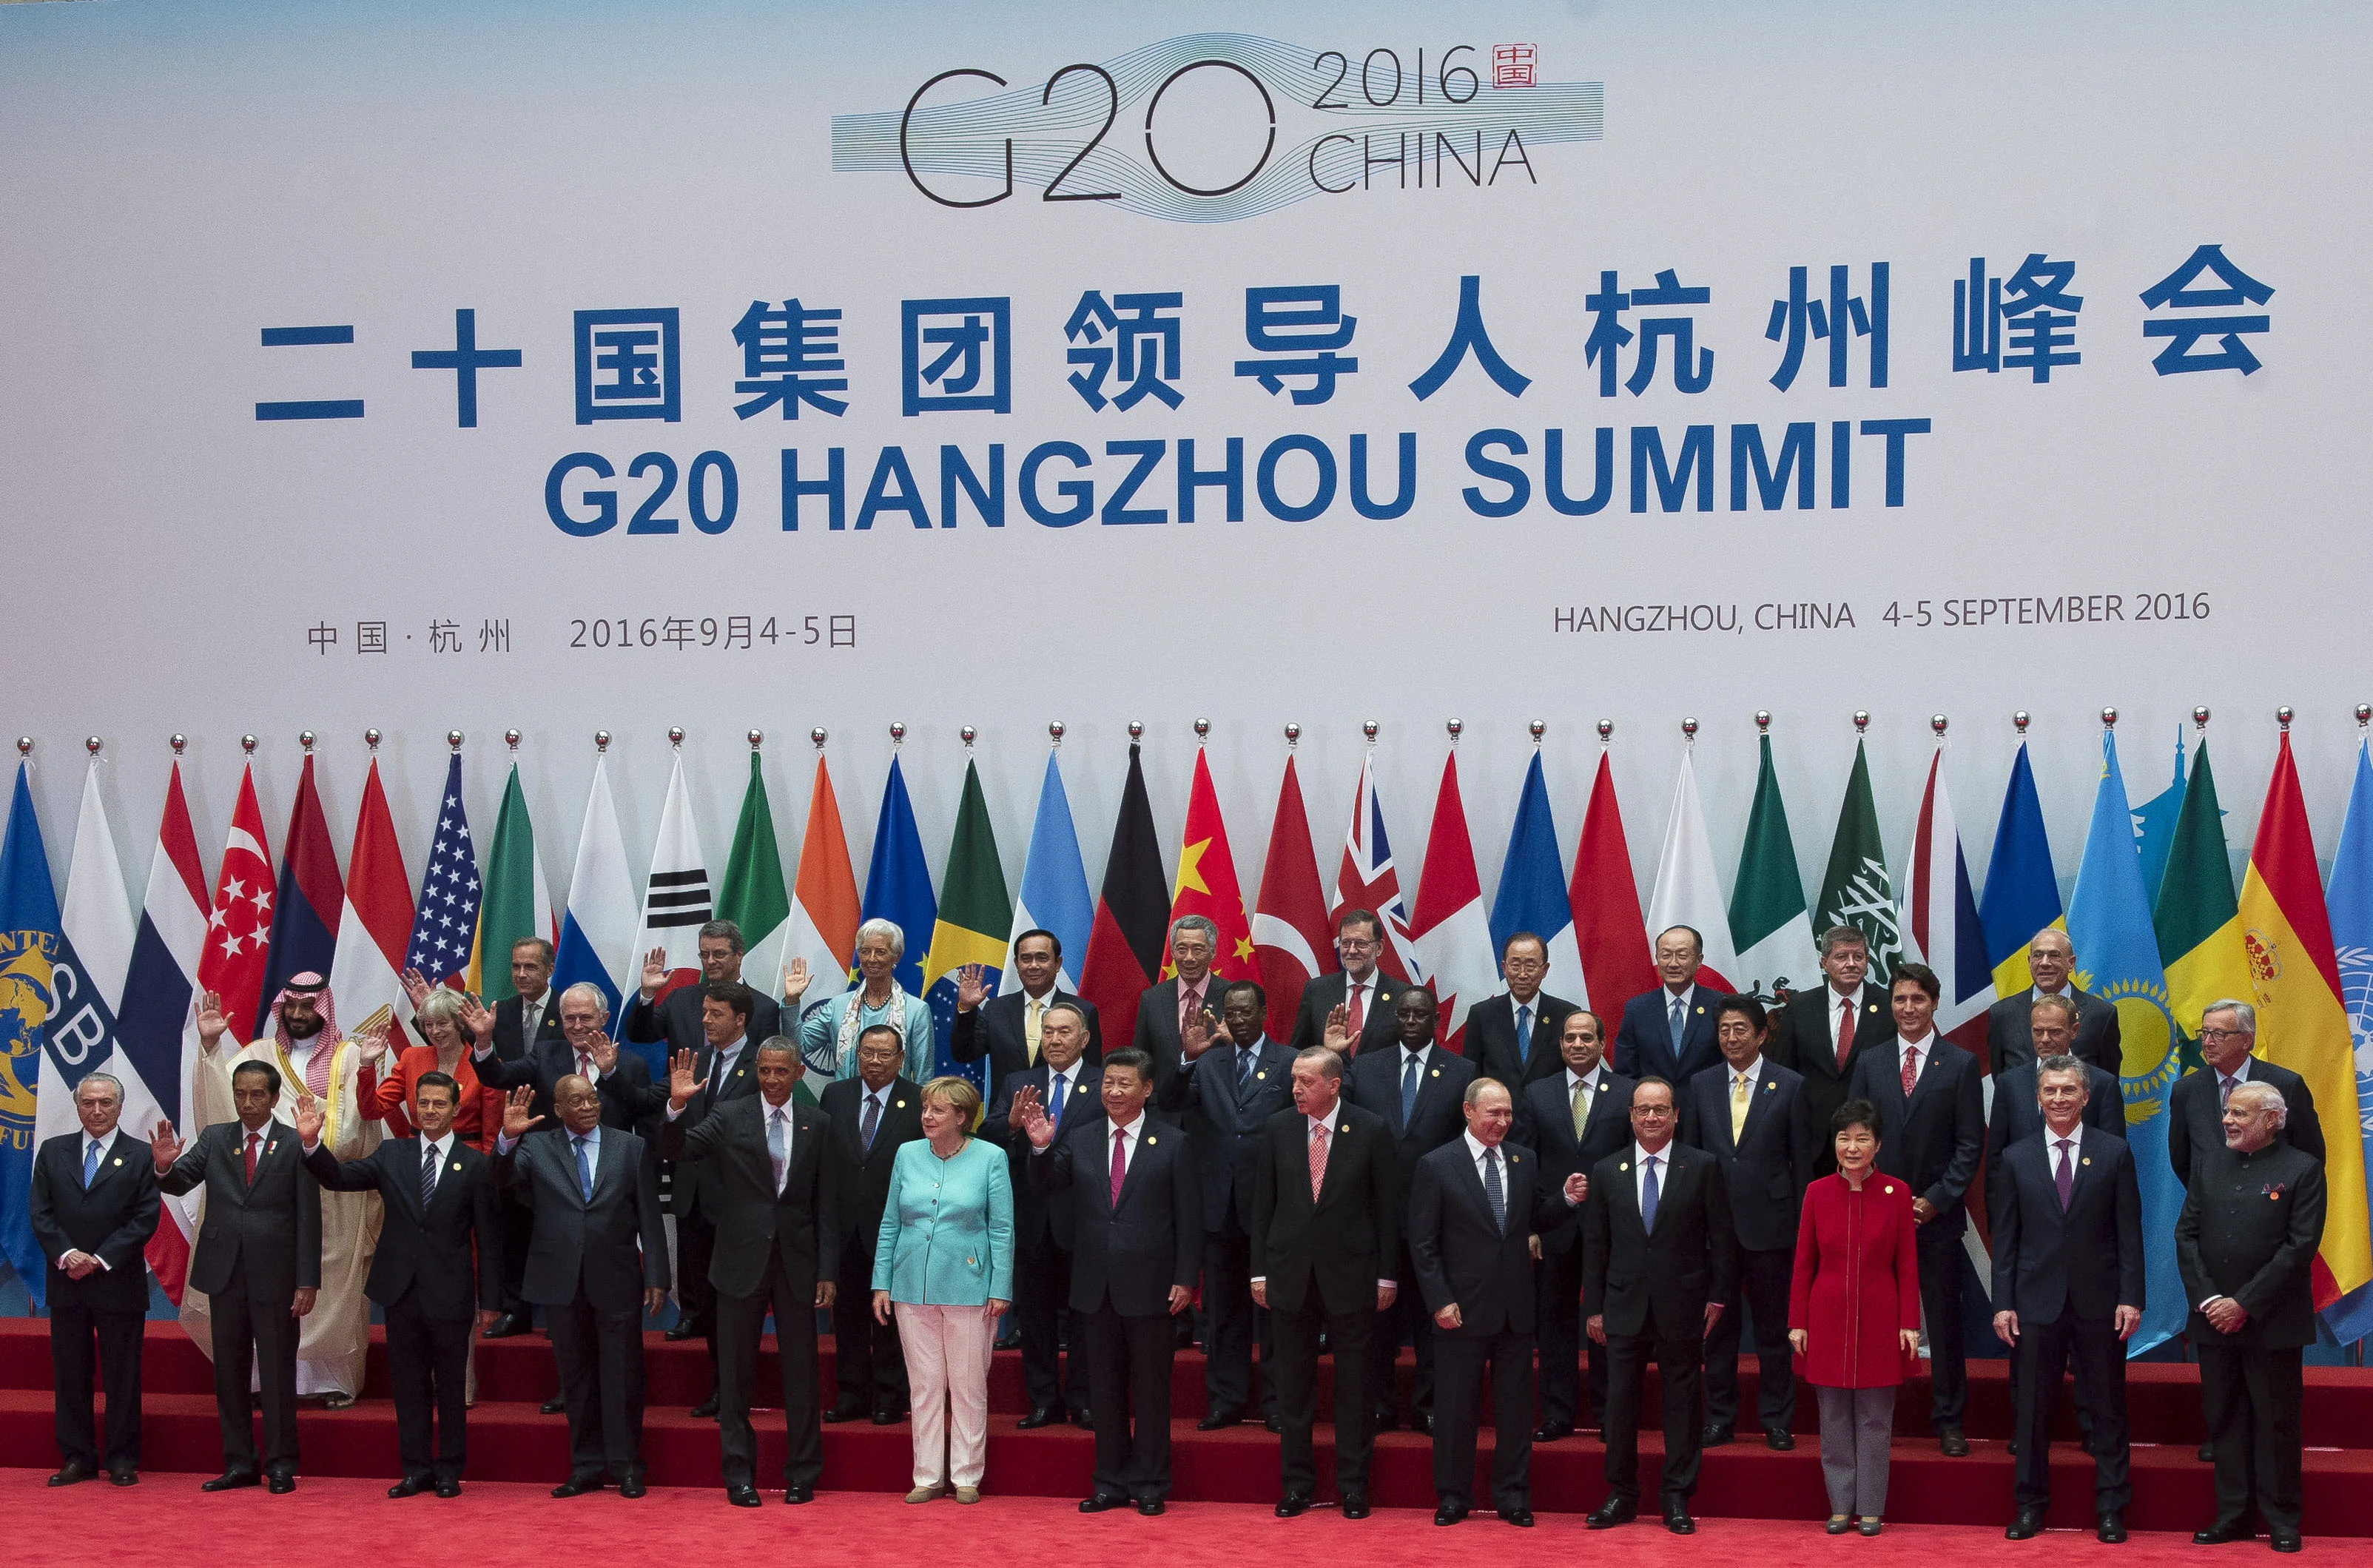 g20_2016_leaders